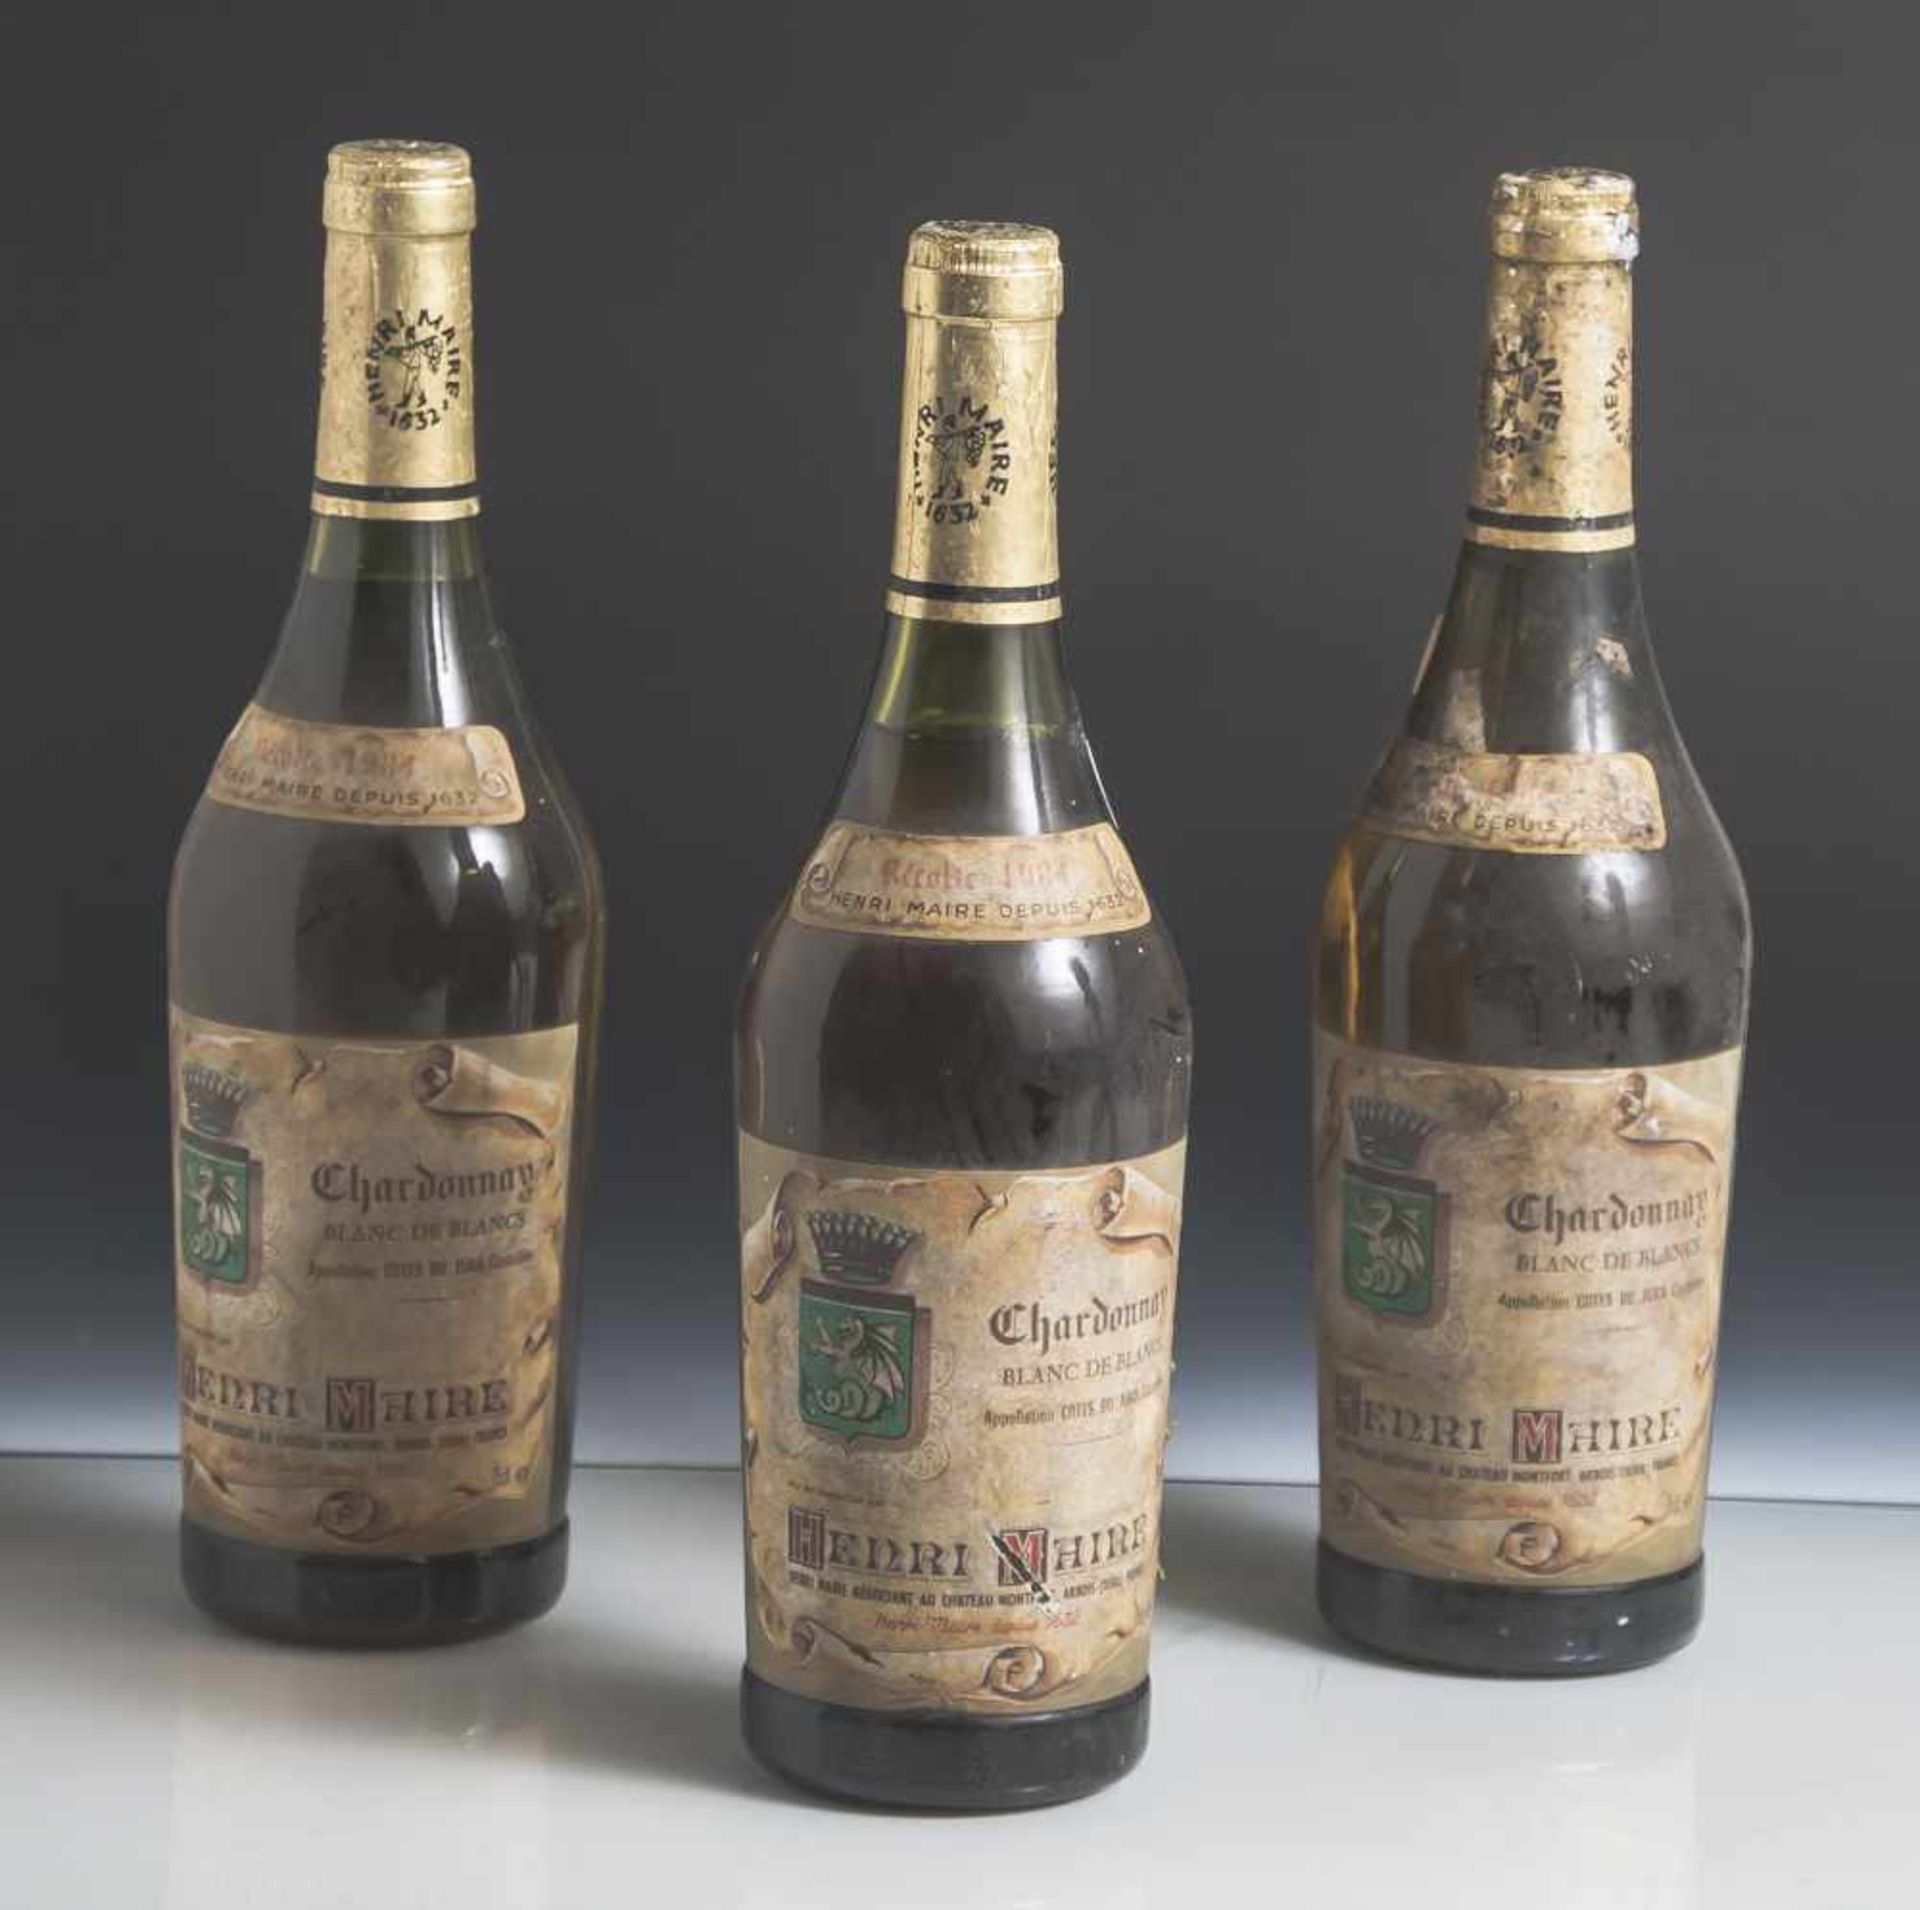 3 Flaschen Blanc de Blancs, Chardonnay Cotes du Jura, Henri Maire, Frankreich Chateau Montfort,